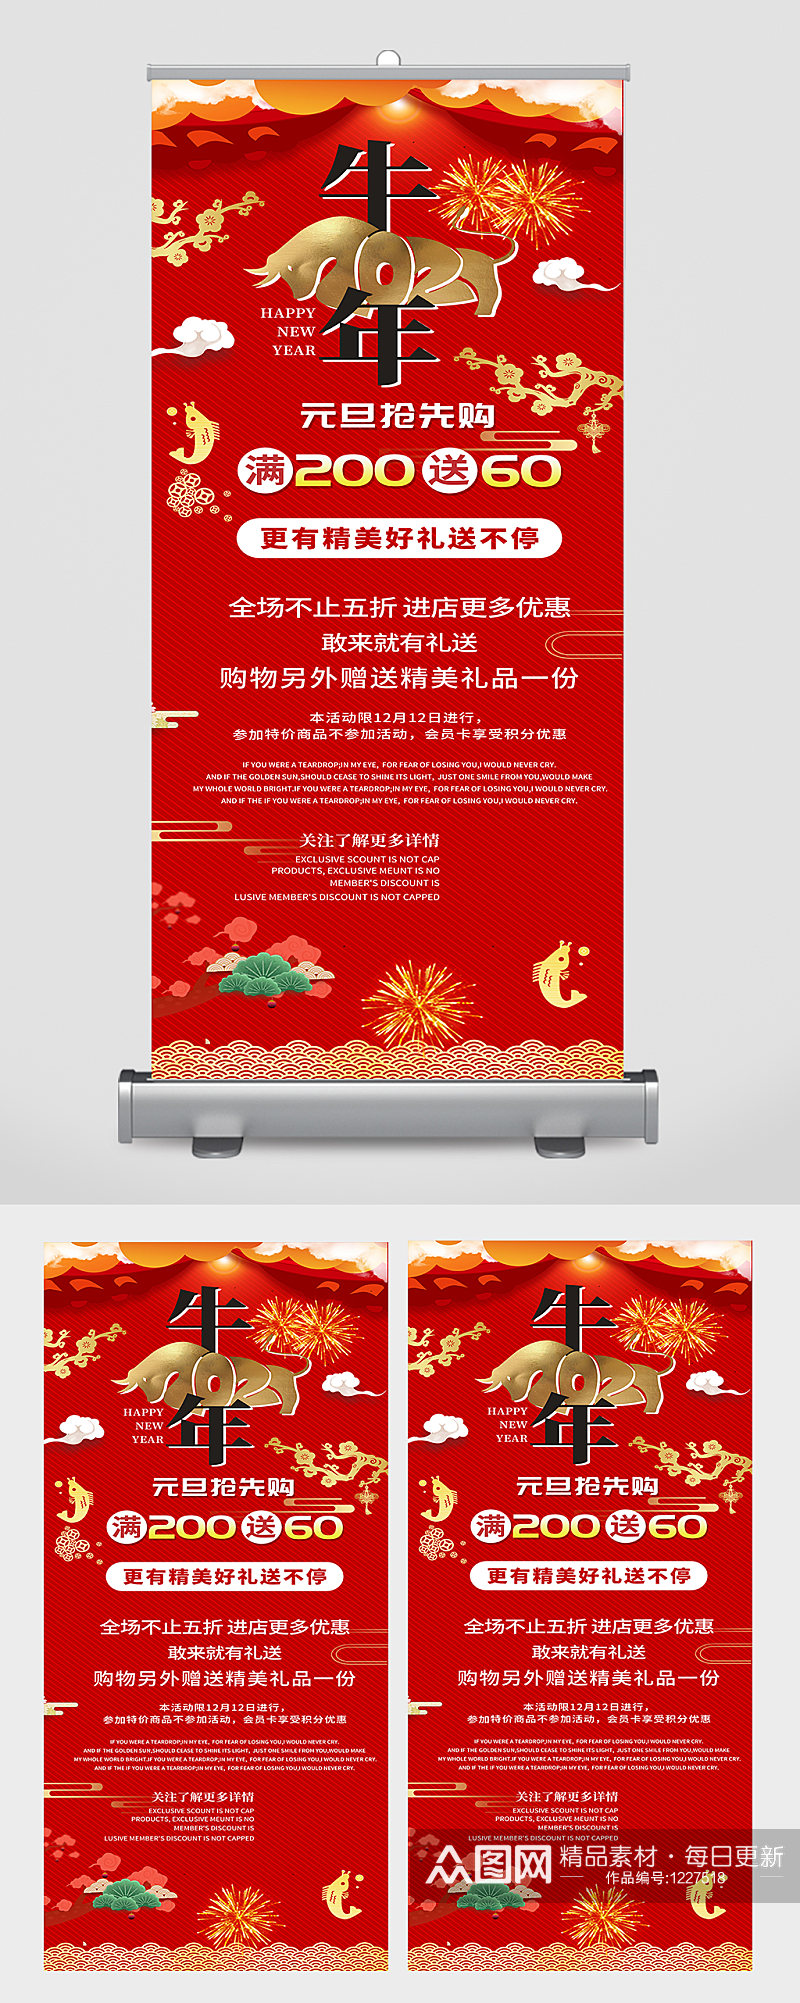 原创红色简约大气中国风易拉宝新年牛年宣传素材